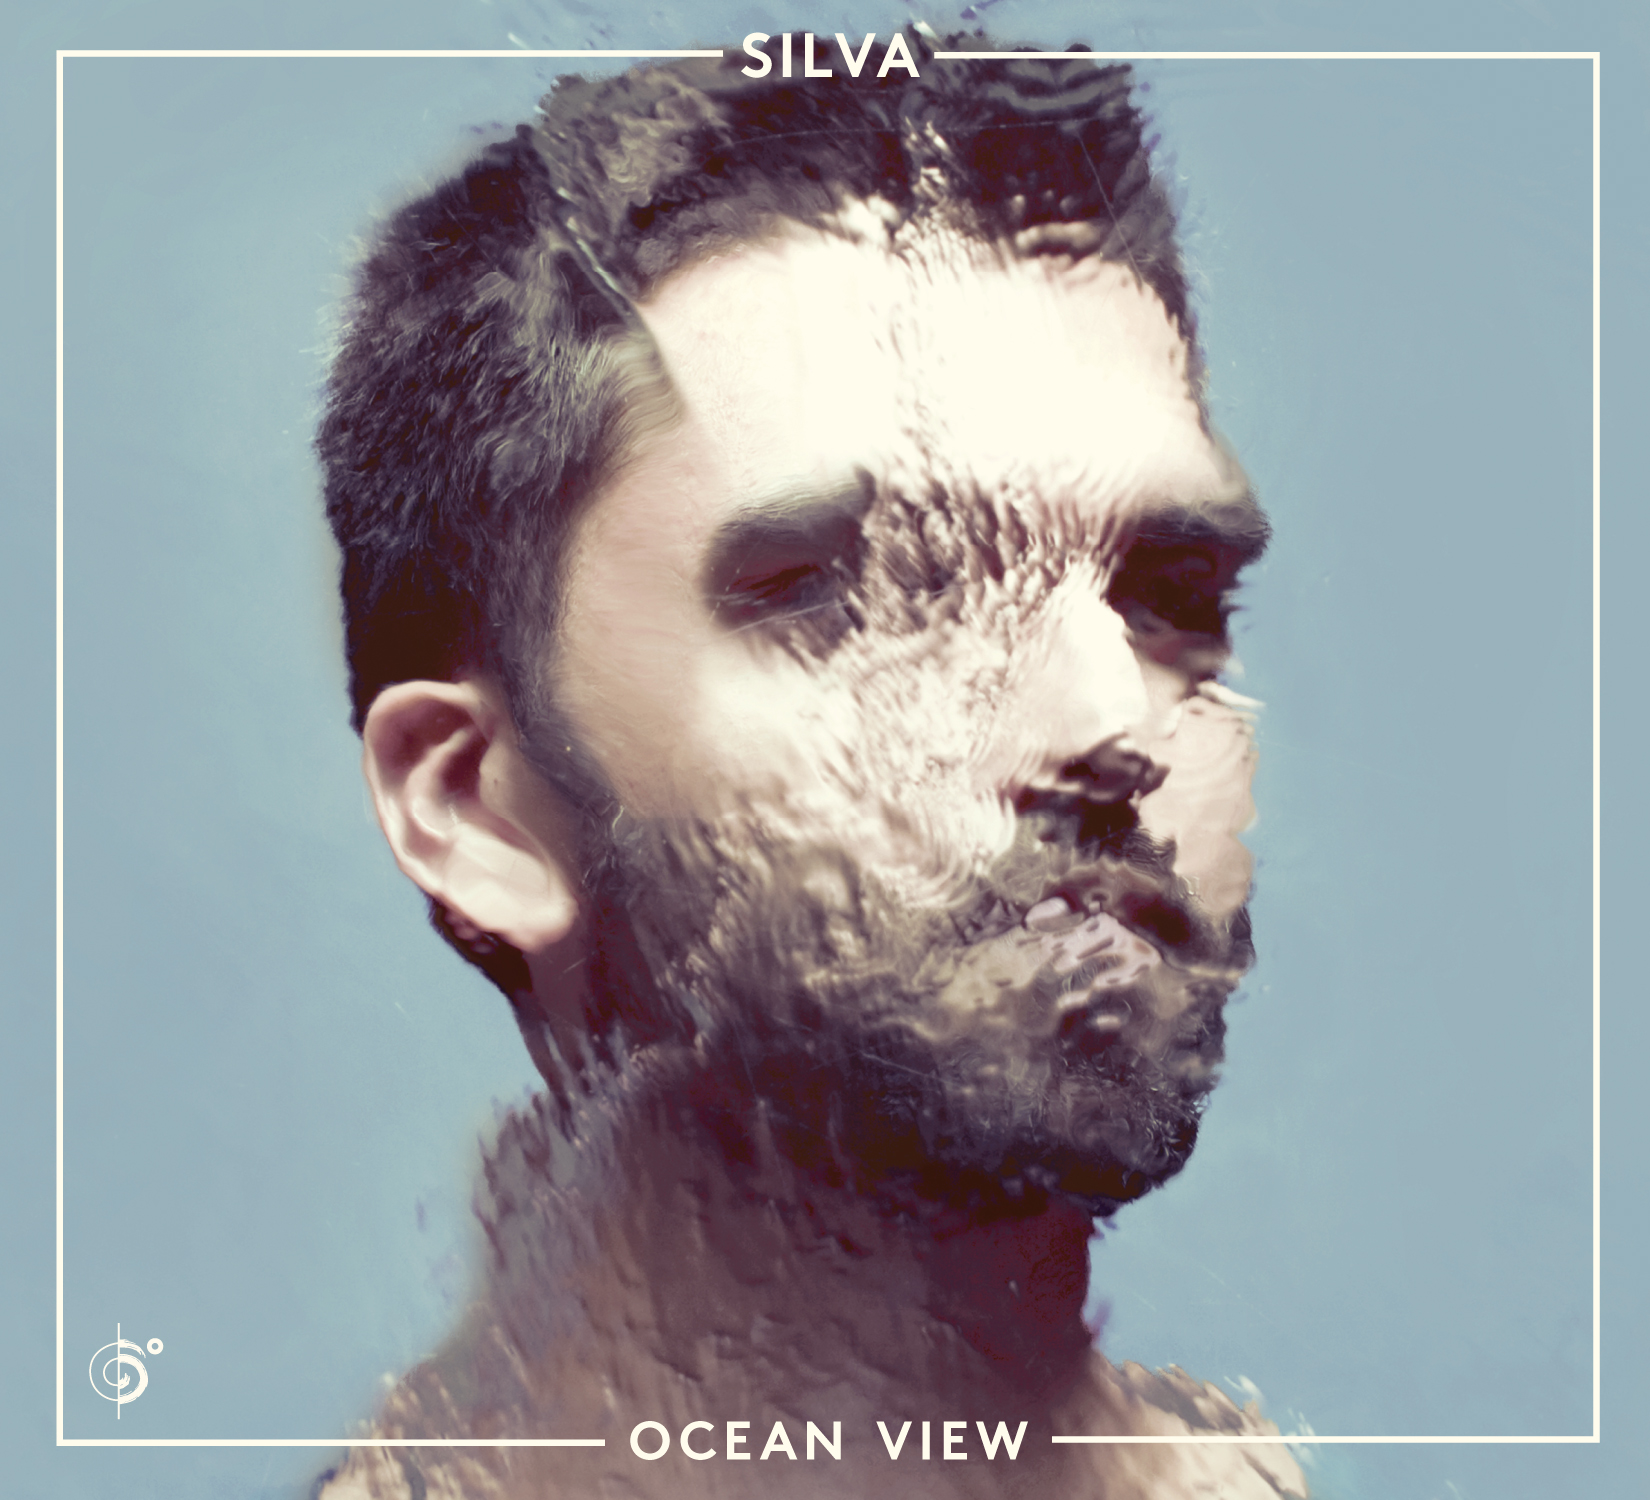 SILVA – Ocean View